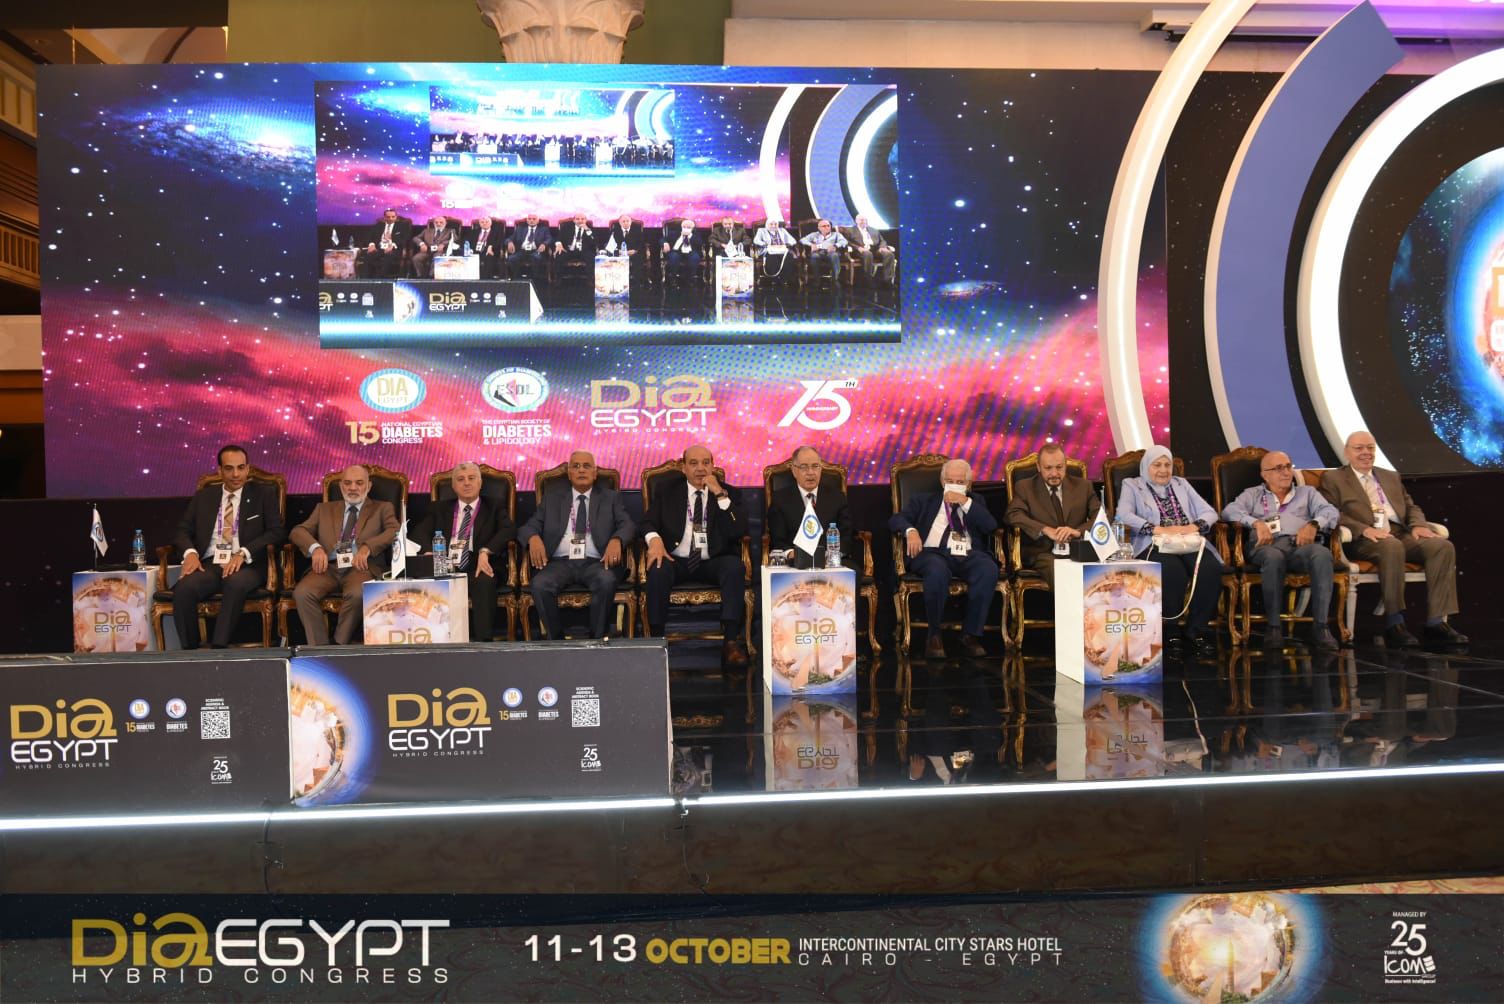 خلال المؤتمر السنوي الخامس عشر للجمعية المصرية للسكر ودهنيات الدم "DIA Egypt"